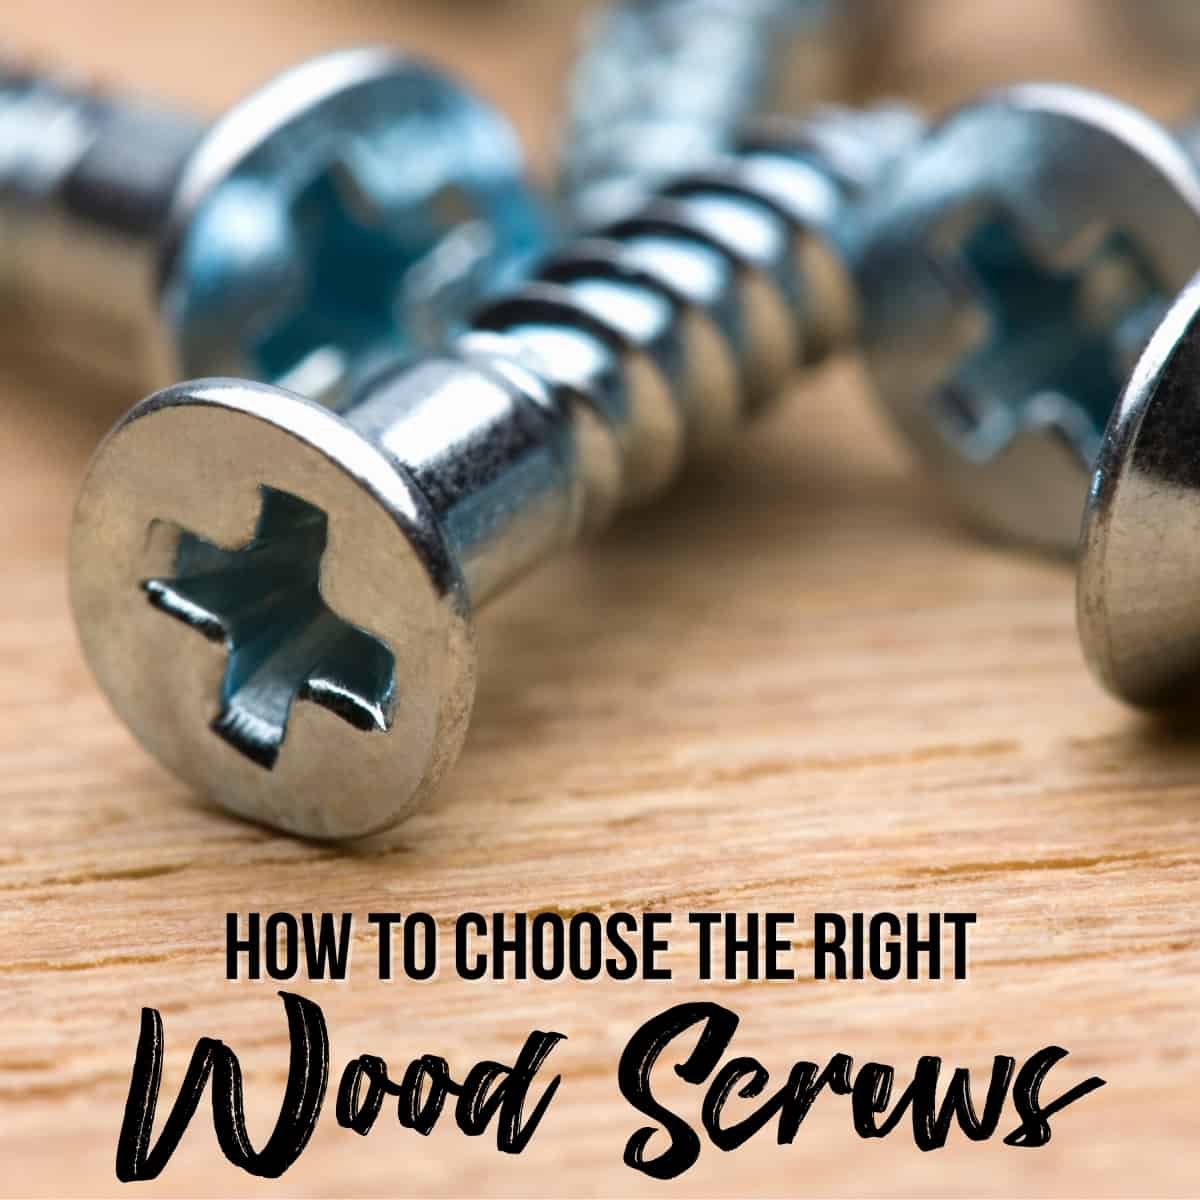 wood screws